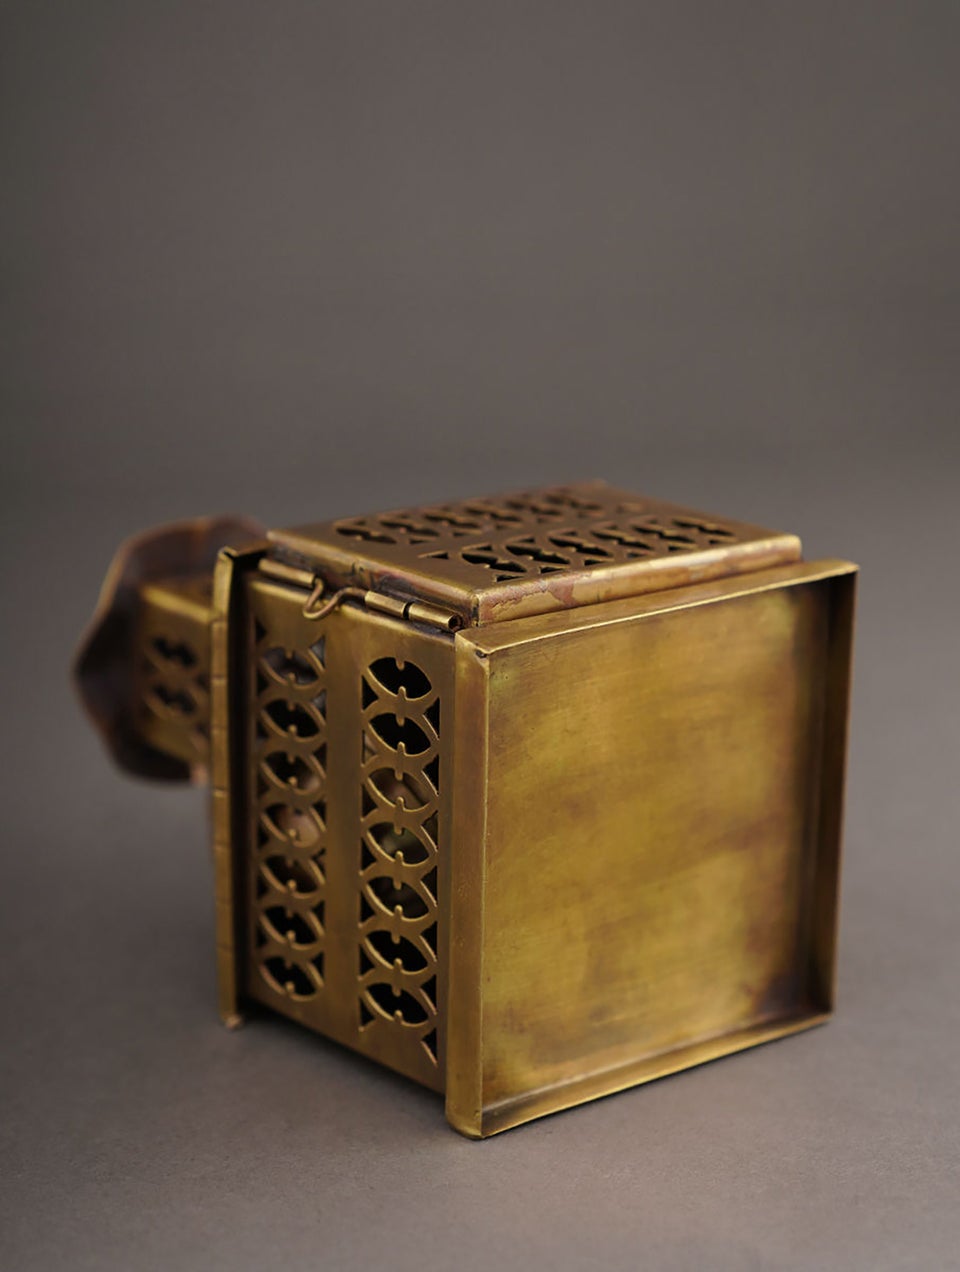 Brass Handcrafted Lantern